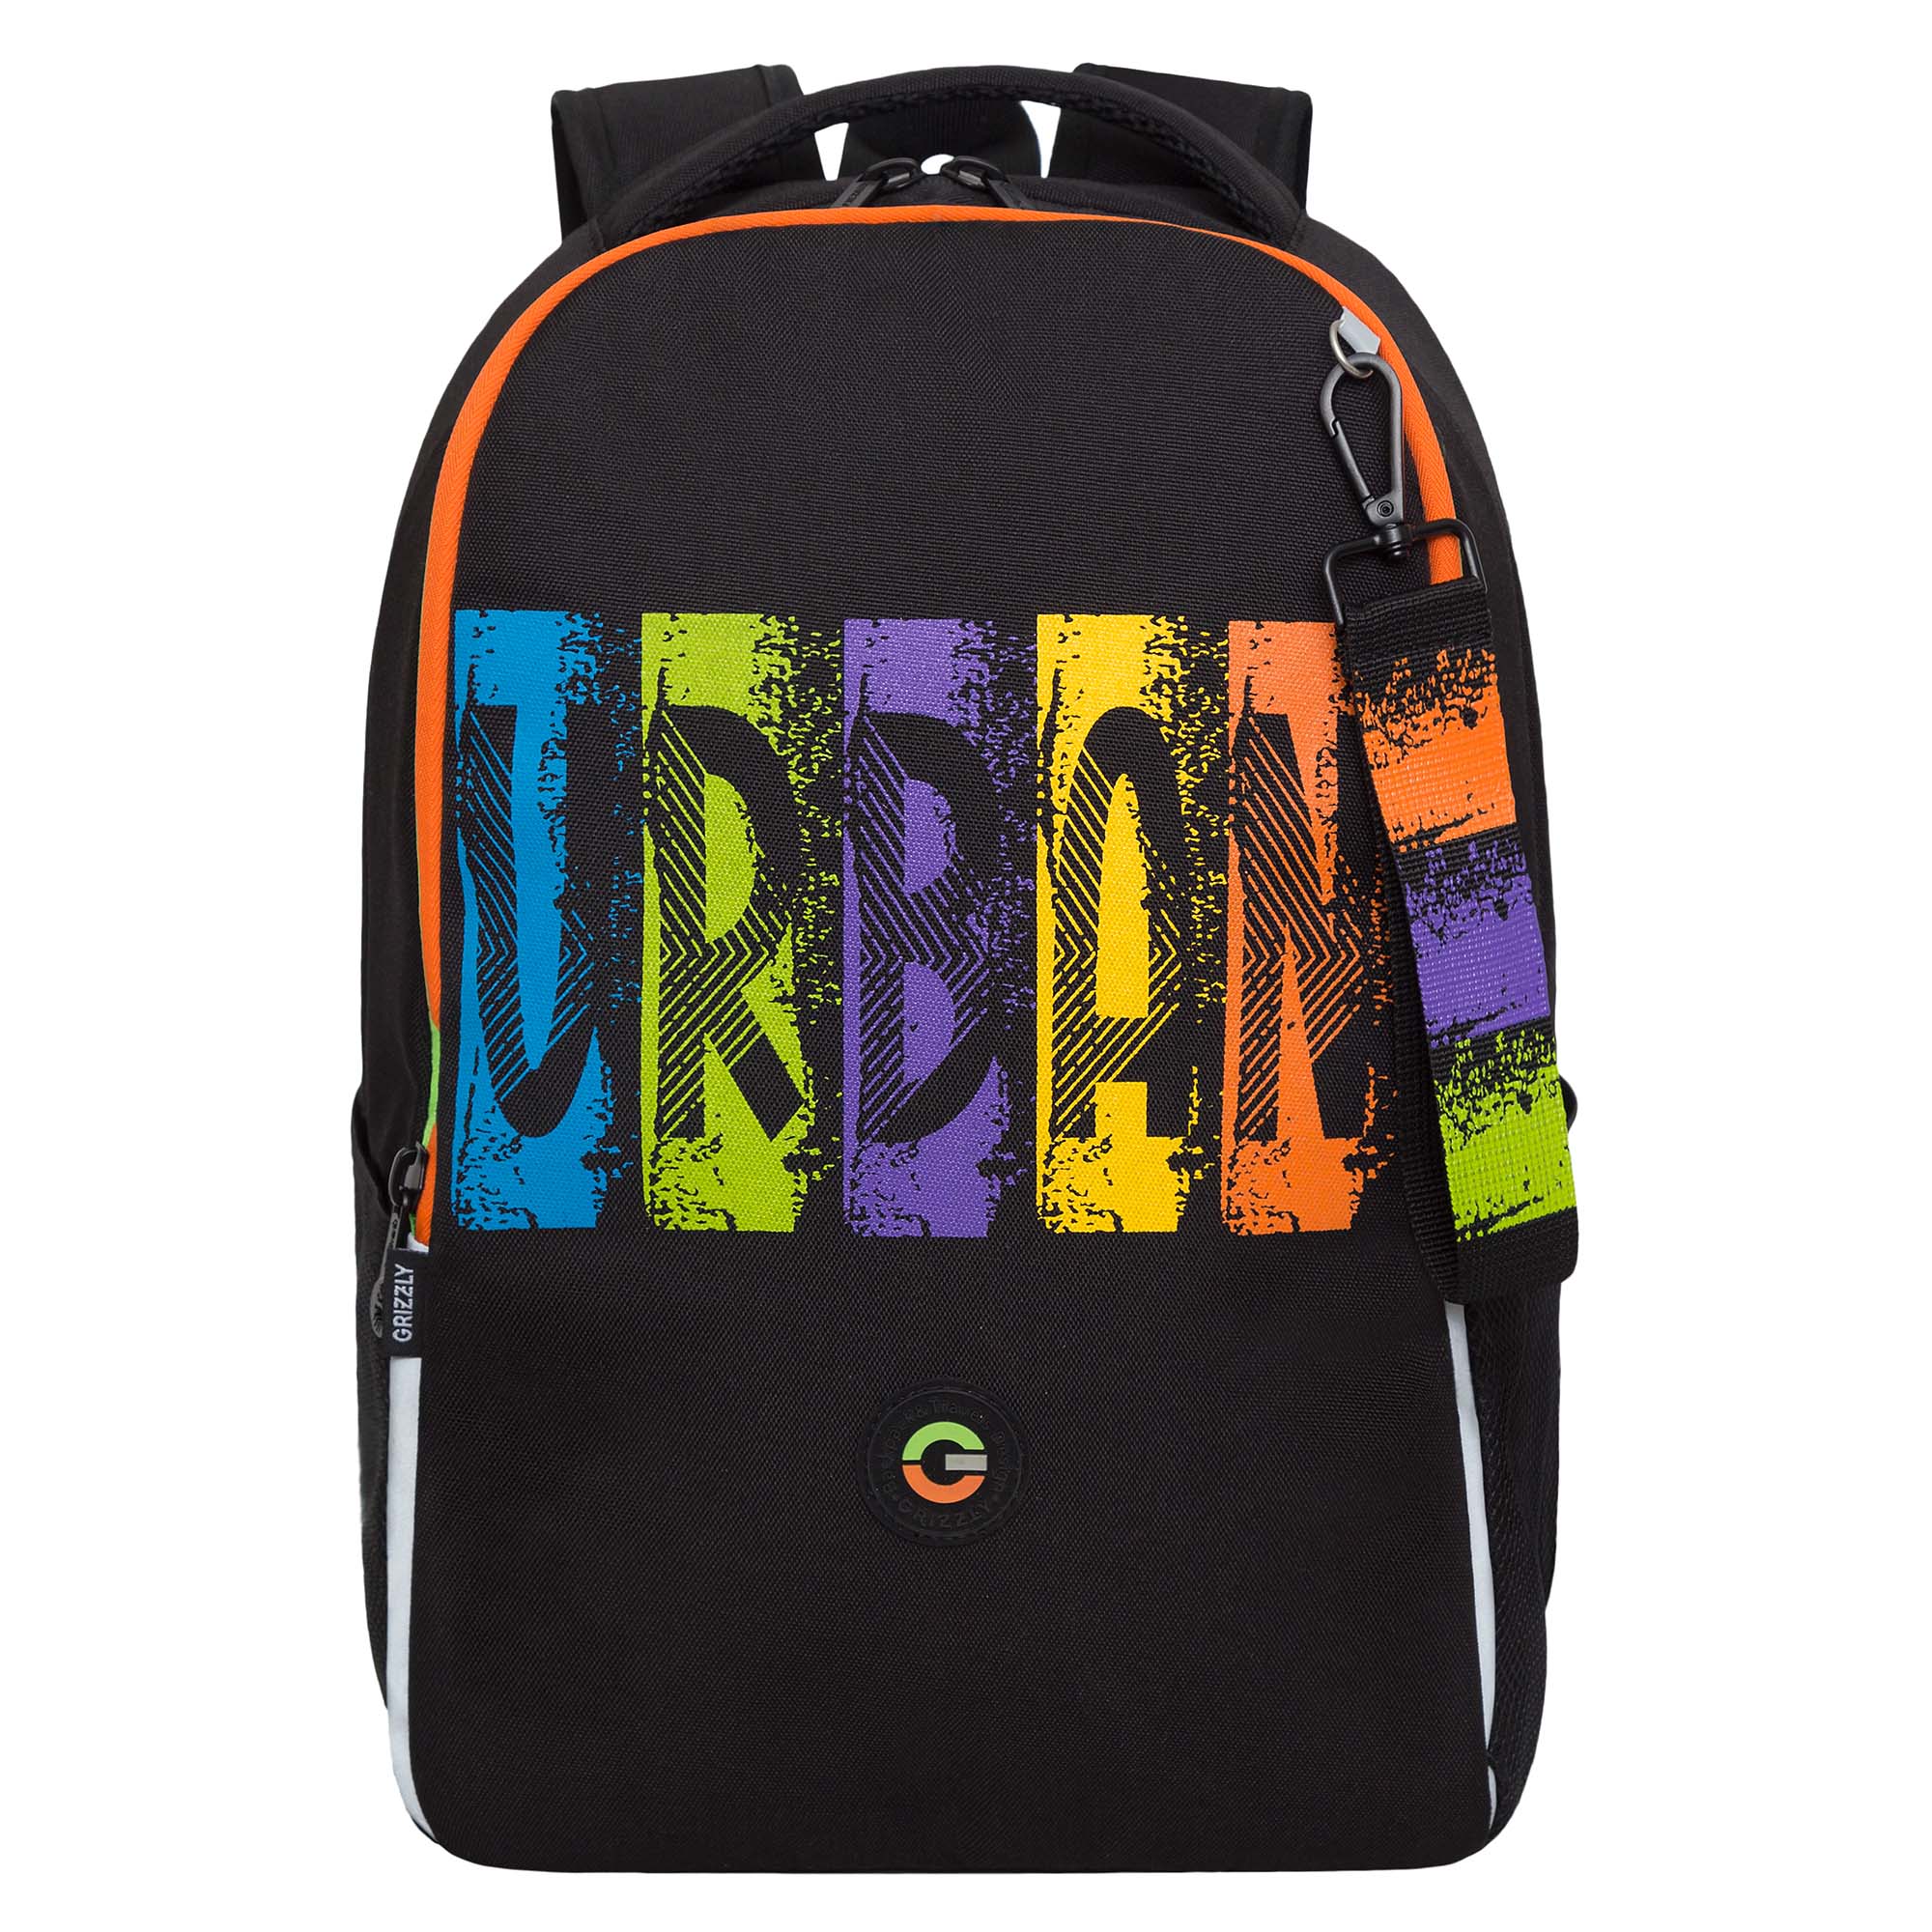 Рюкзак школьный GRIZZLY легкий с жесткой спинкой, 2 отделения, черный, RB-451-3/1 рюкзак школьный сool pack discovery camo orange 44х32х13 см 30 л 2 отделения